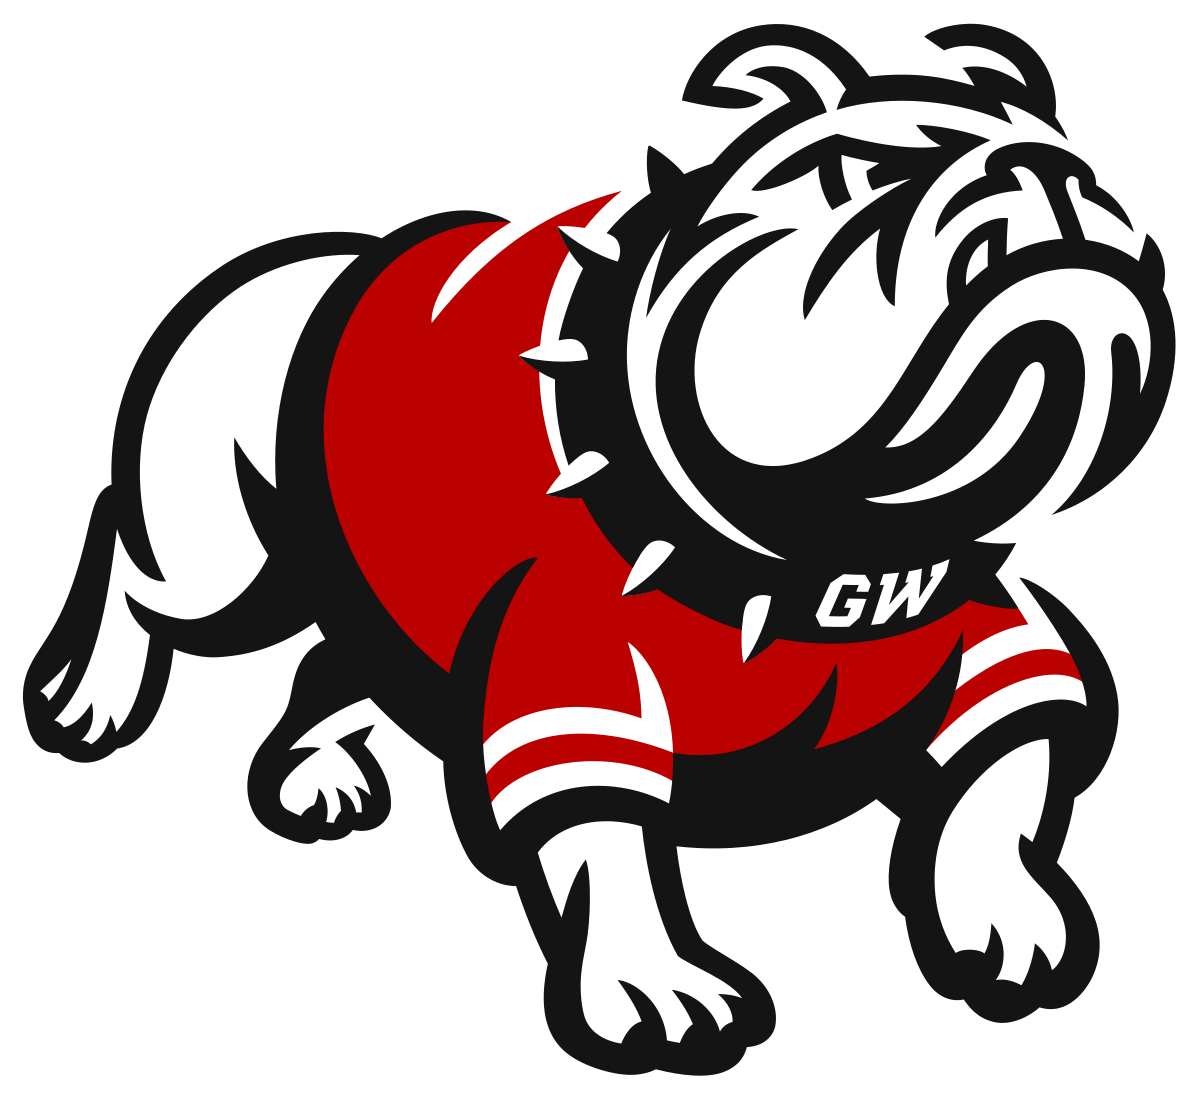 Gardner Webb logo